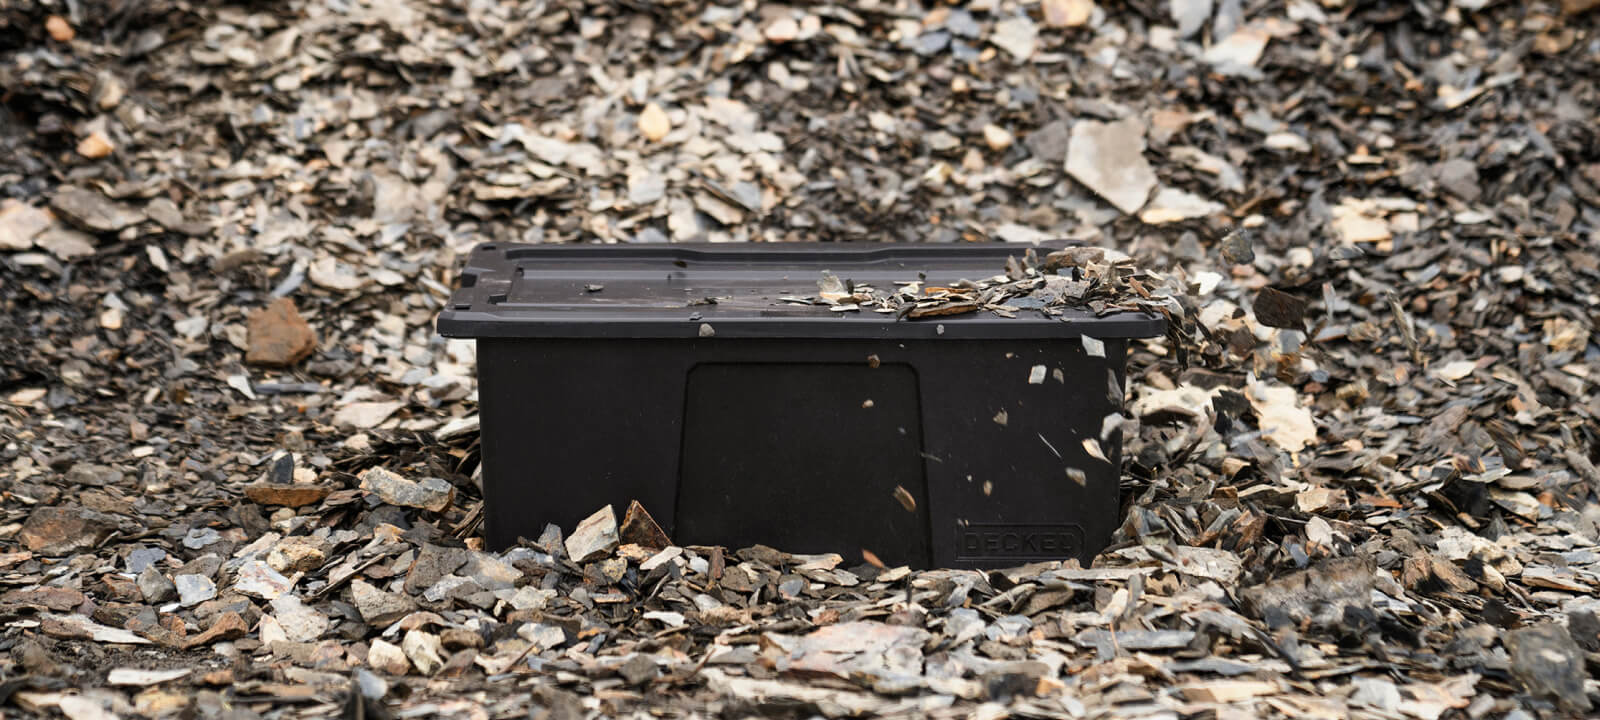 Black D-co bin sitting in gravel